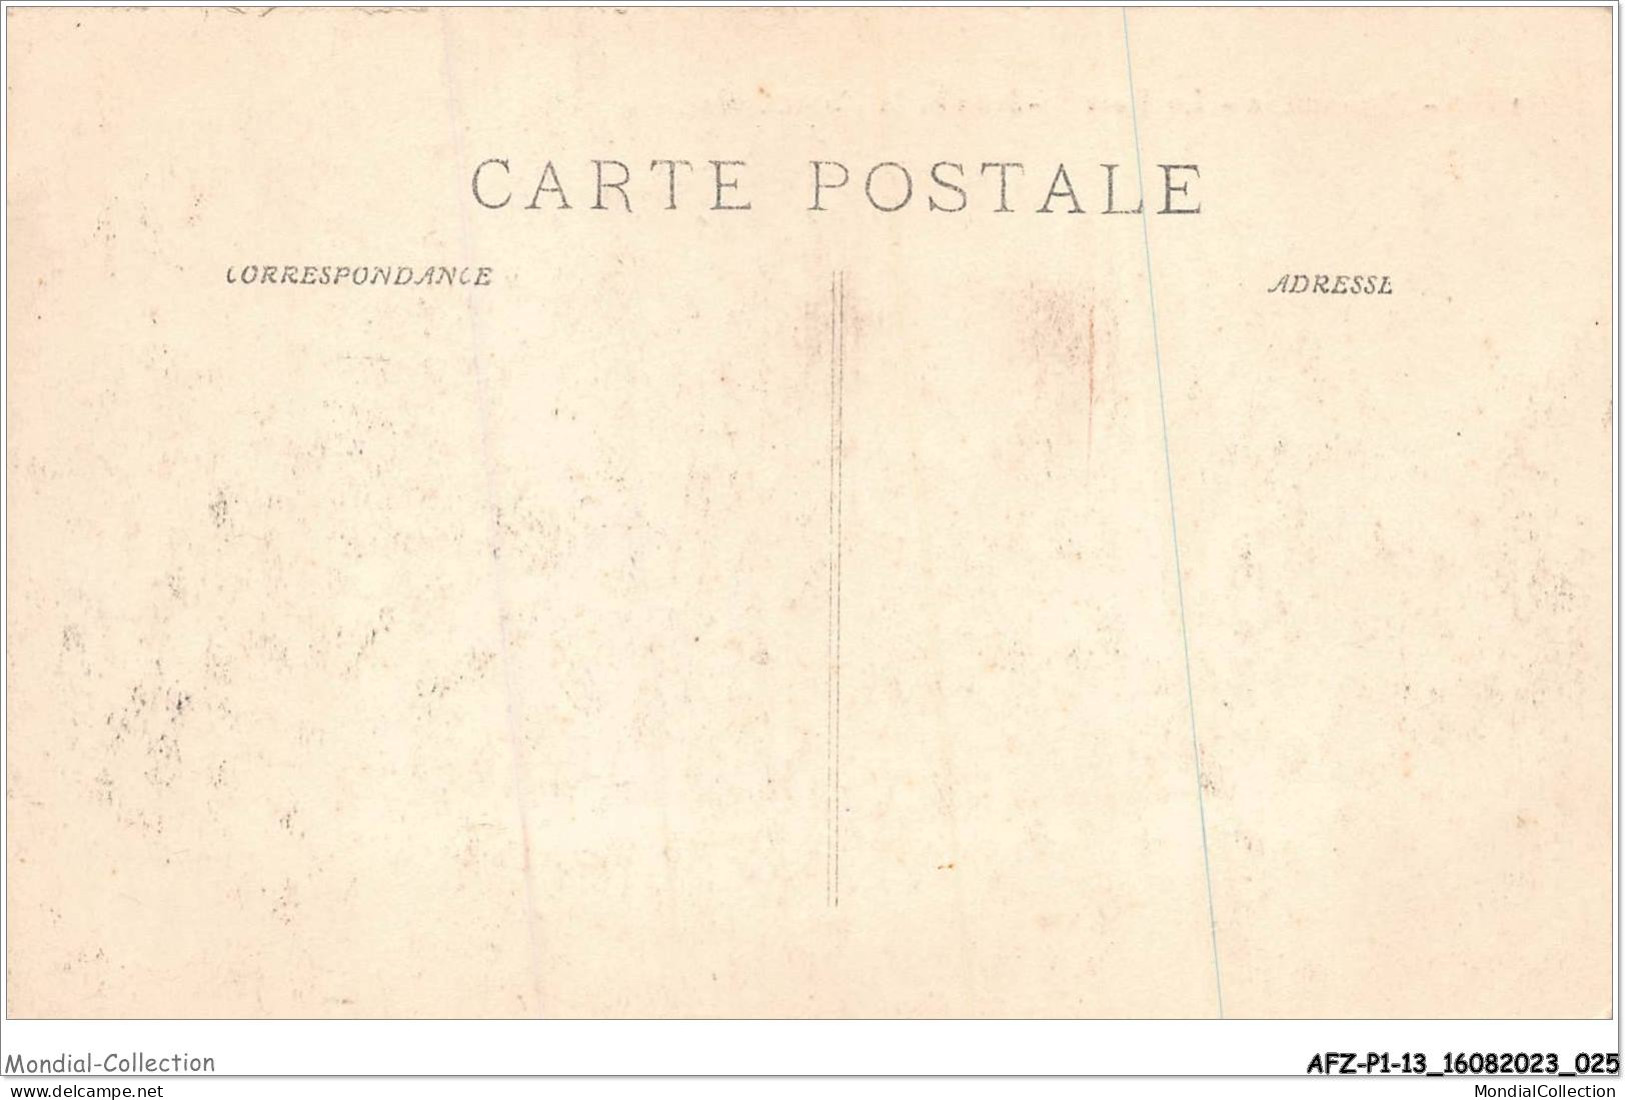 AFZP1-13-0013 - MARSEILLE - Le Fort Saint-jean Et La Cathédrale - Joliette, Port Area